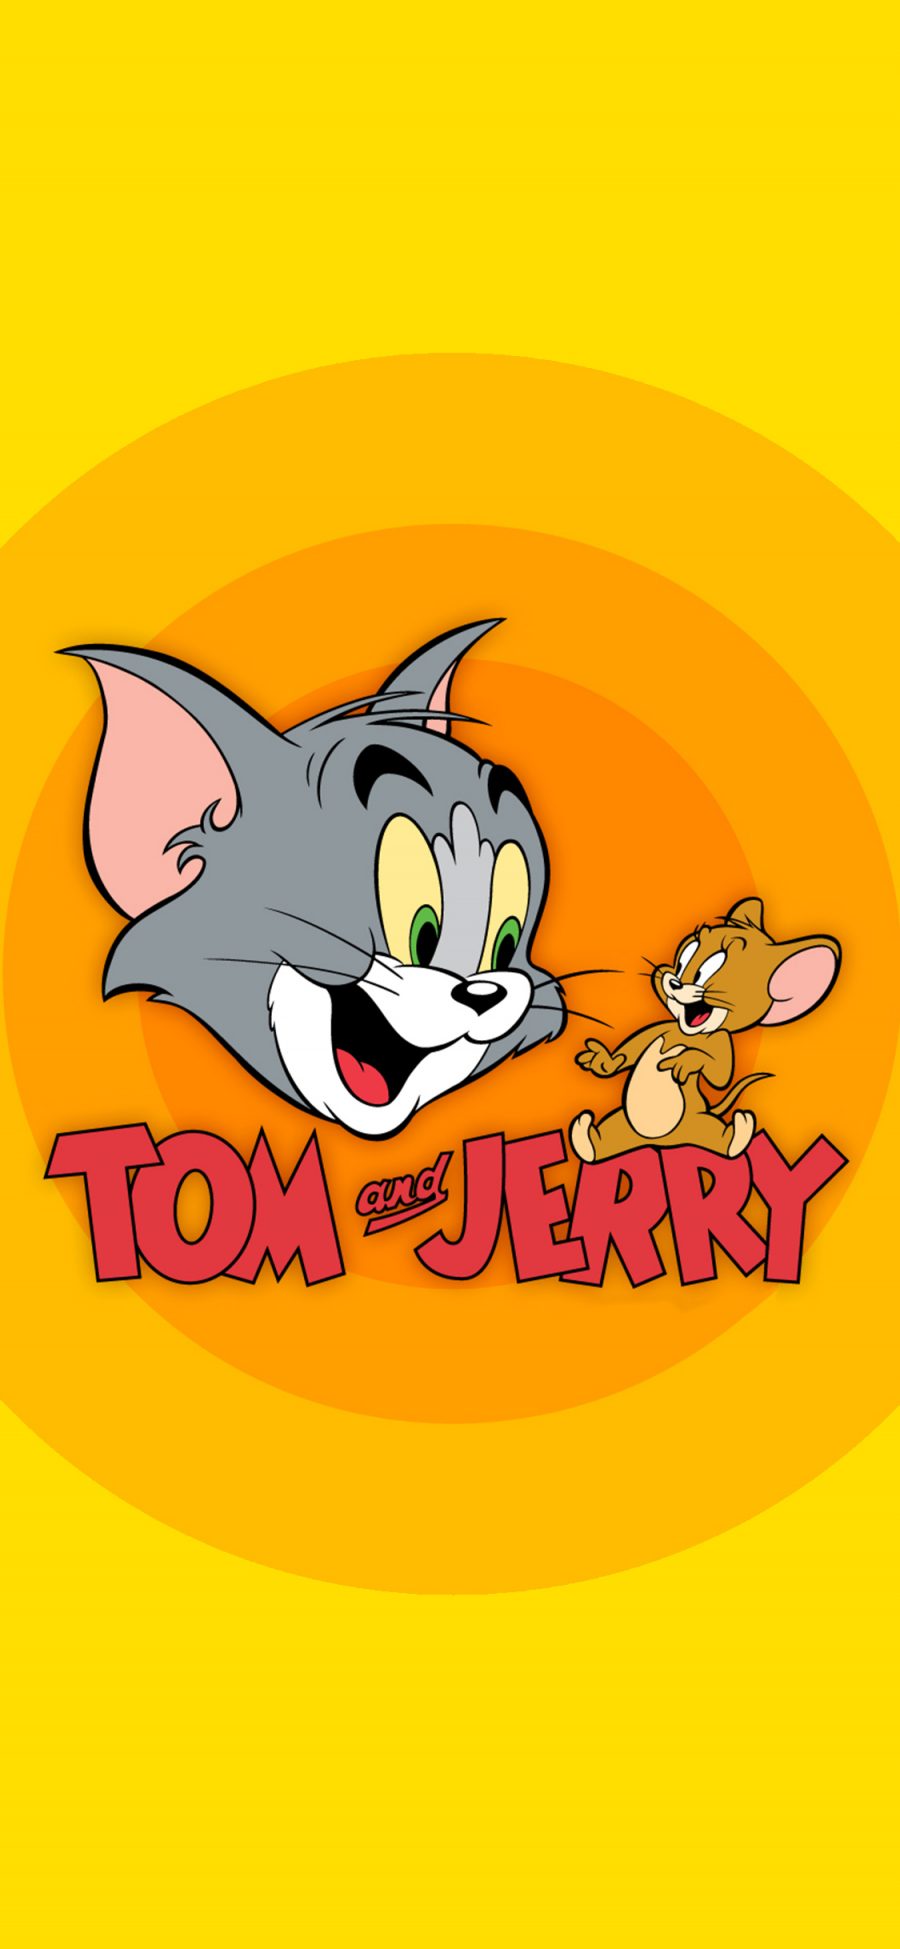 [2436×1125]猫和老鼠 Tom and Jerry 汤姆猫 杰瑞 黄色 卡通 苹果手机动漫壁纸图片